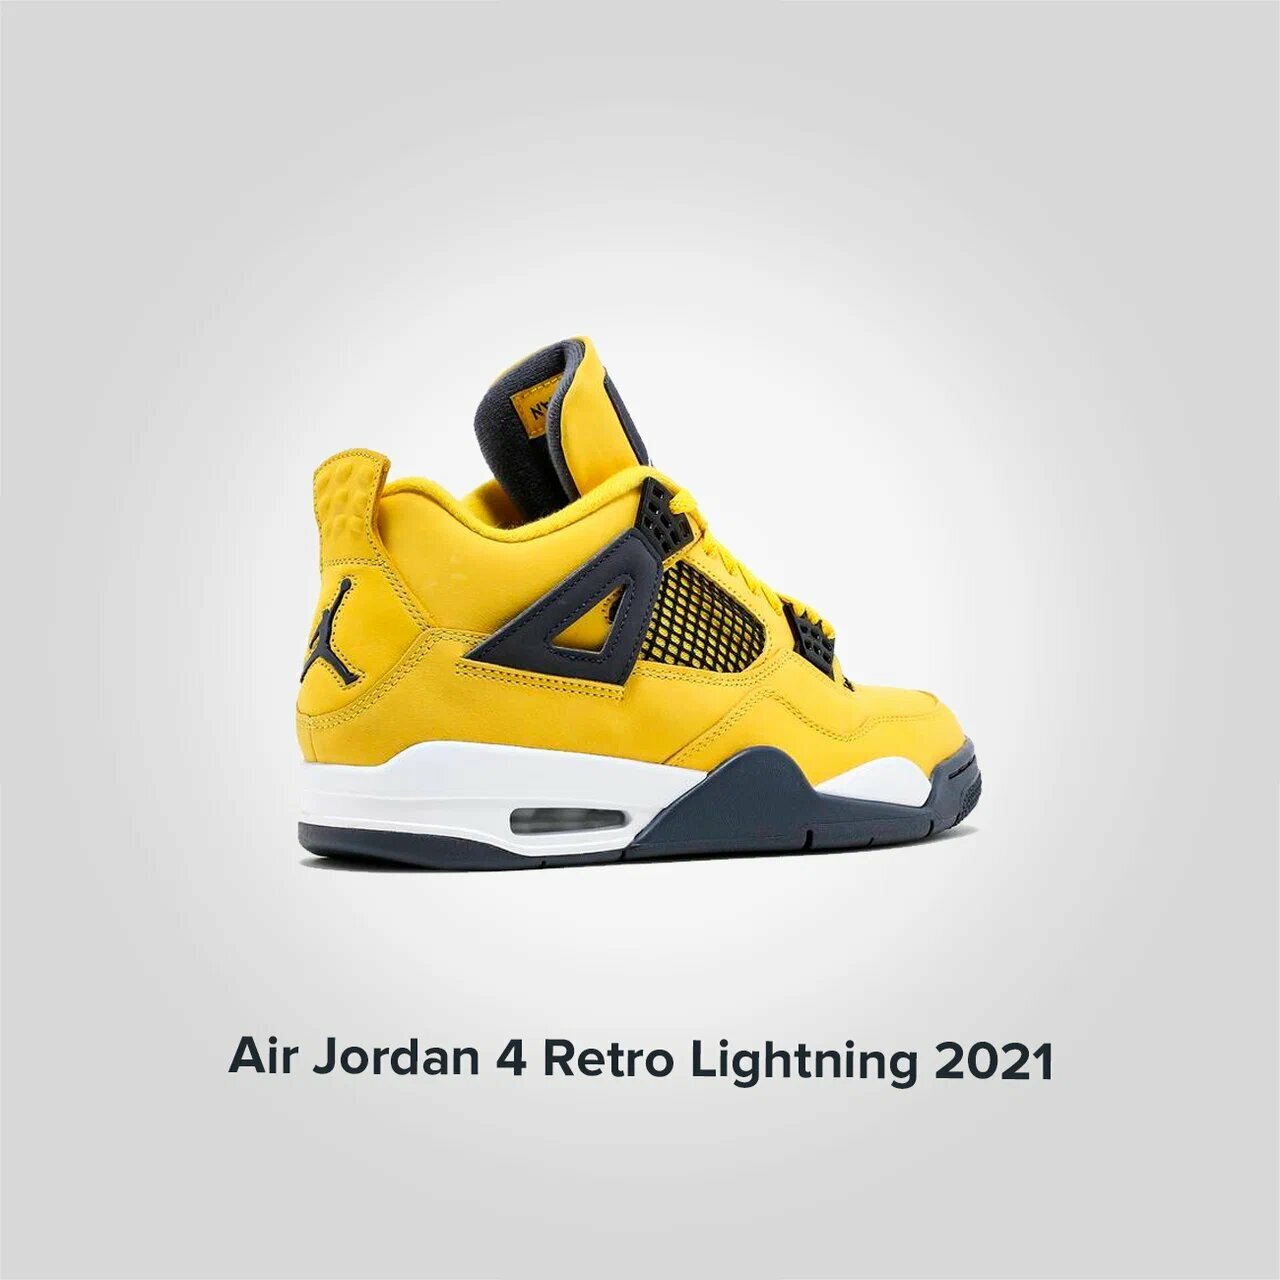 Jordan 4 Retro Lightning 2021